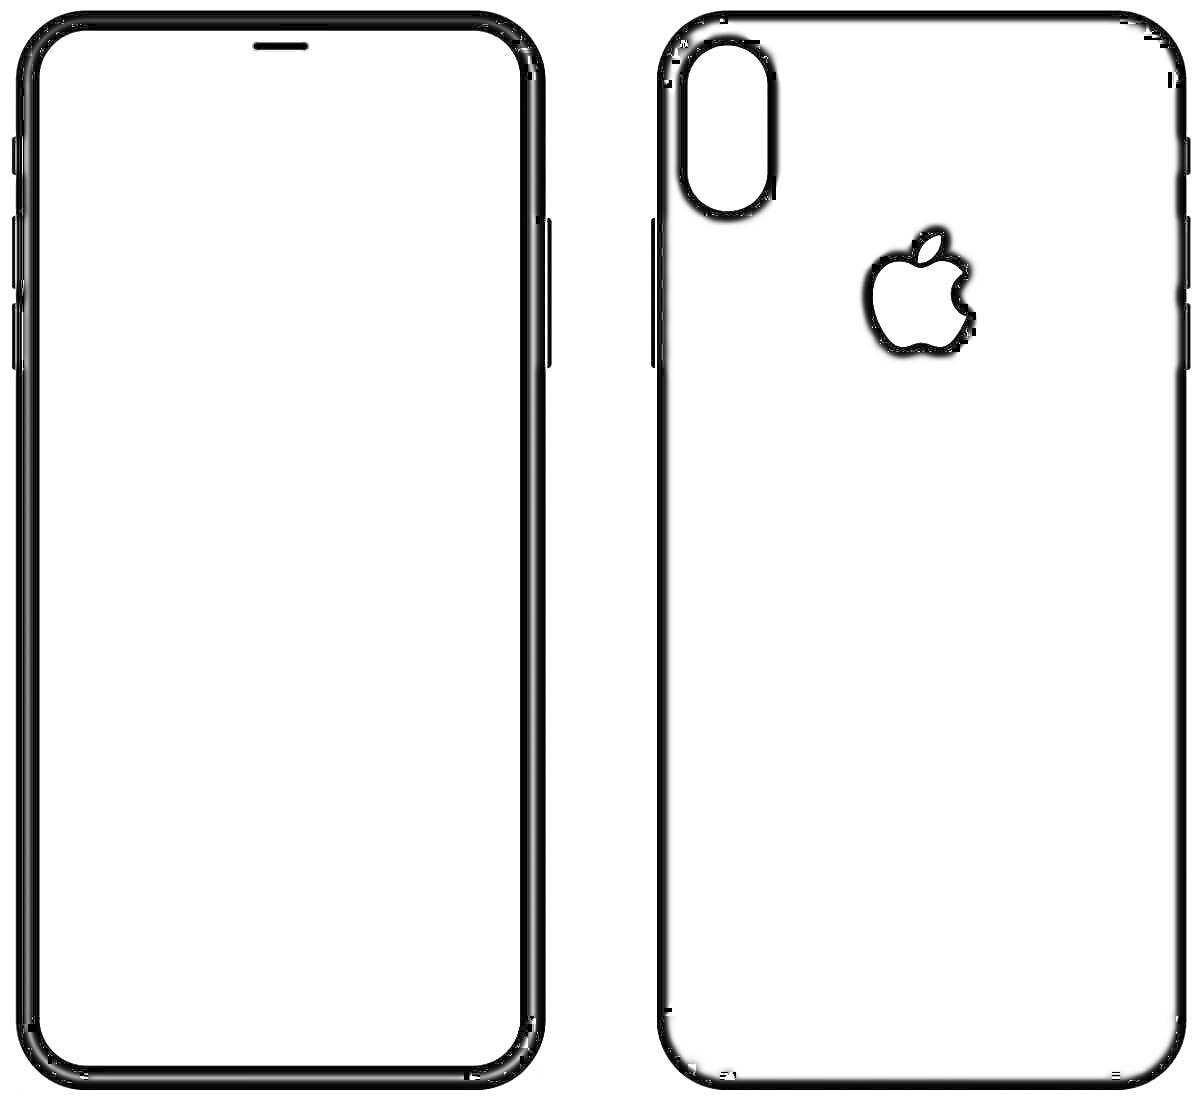 Раскраска Раскраска с передней и задней стороны айфона 10, с логотипом яблока, двойной камерой